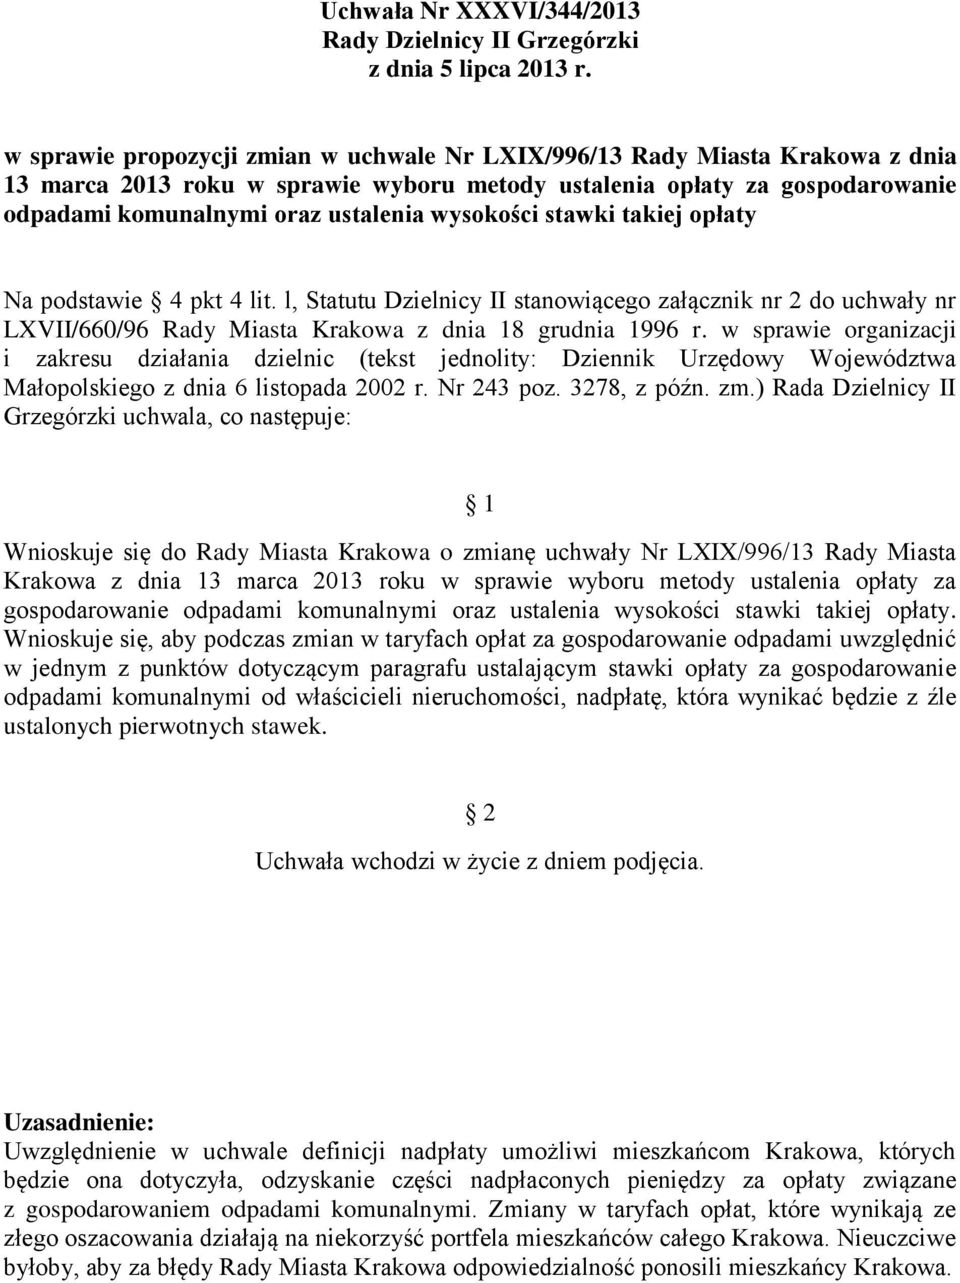 l, Statutu Dzielnicy II stanowiącego załącznik nr 2 do uchwały nr LXVII/660/96 Rady Miasta Krakowa z dnia 18 grudnia 1996 r.